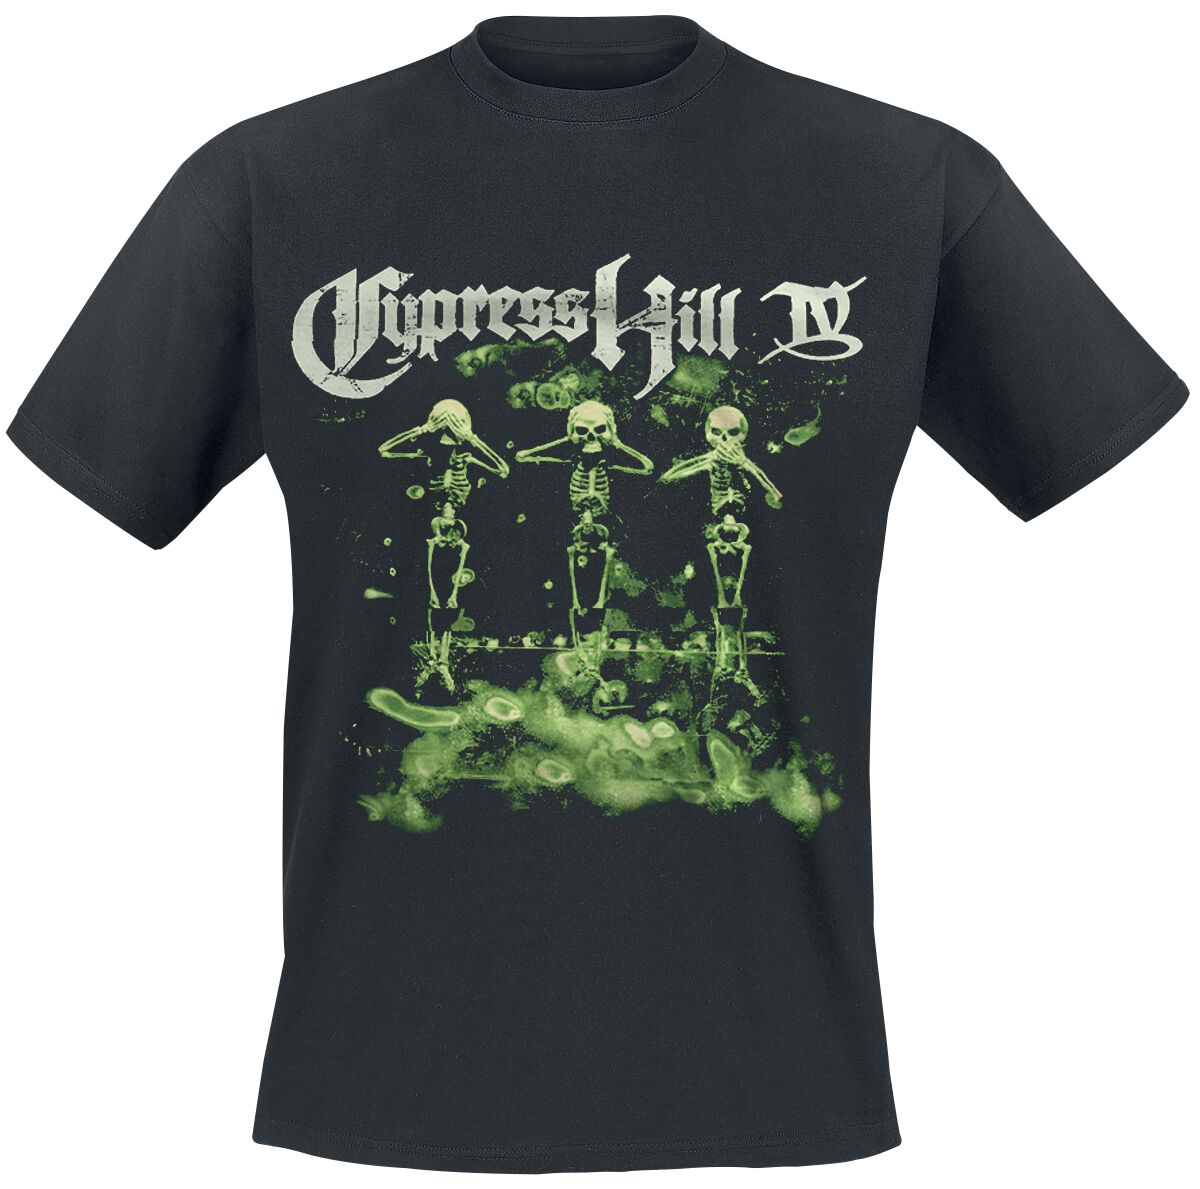 Cypress Hill T-Shirt - IV Album - M bis 5XL - für Männer - Größe 4XL - schwarz  - Lizenziertes Merchandise!